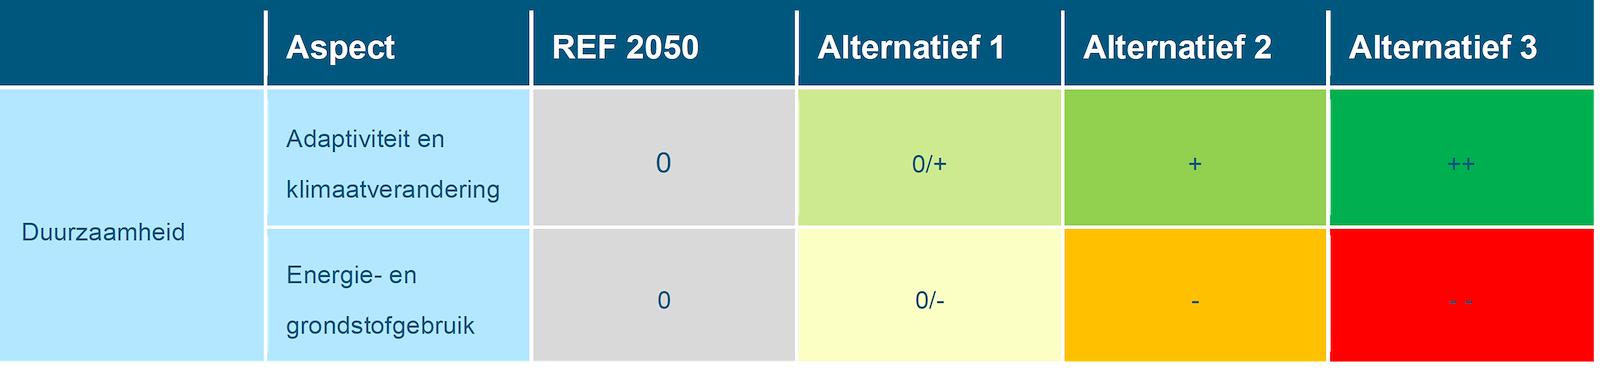 Deze tabel laat de totaalbeoordeling voor de milieueffecten van het beoordelingsaspect duurzaamheid zien voor de Maas, voor de referentiesituatie en de drie alternatieven. Deze beoordeling is toegelicht in de tekst voorafgaande aan de tabel.